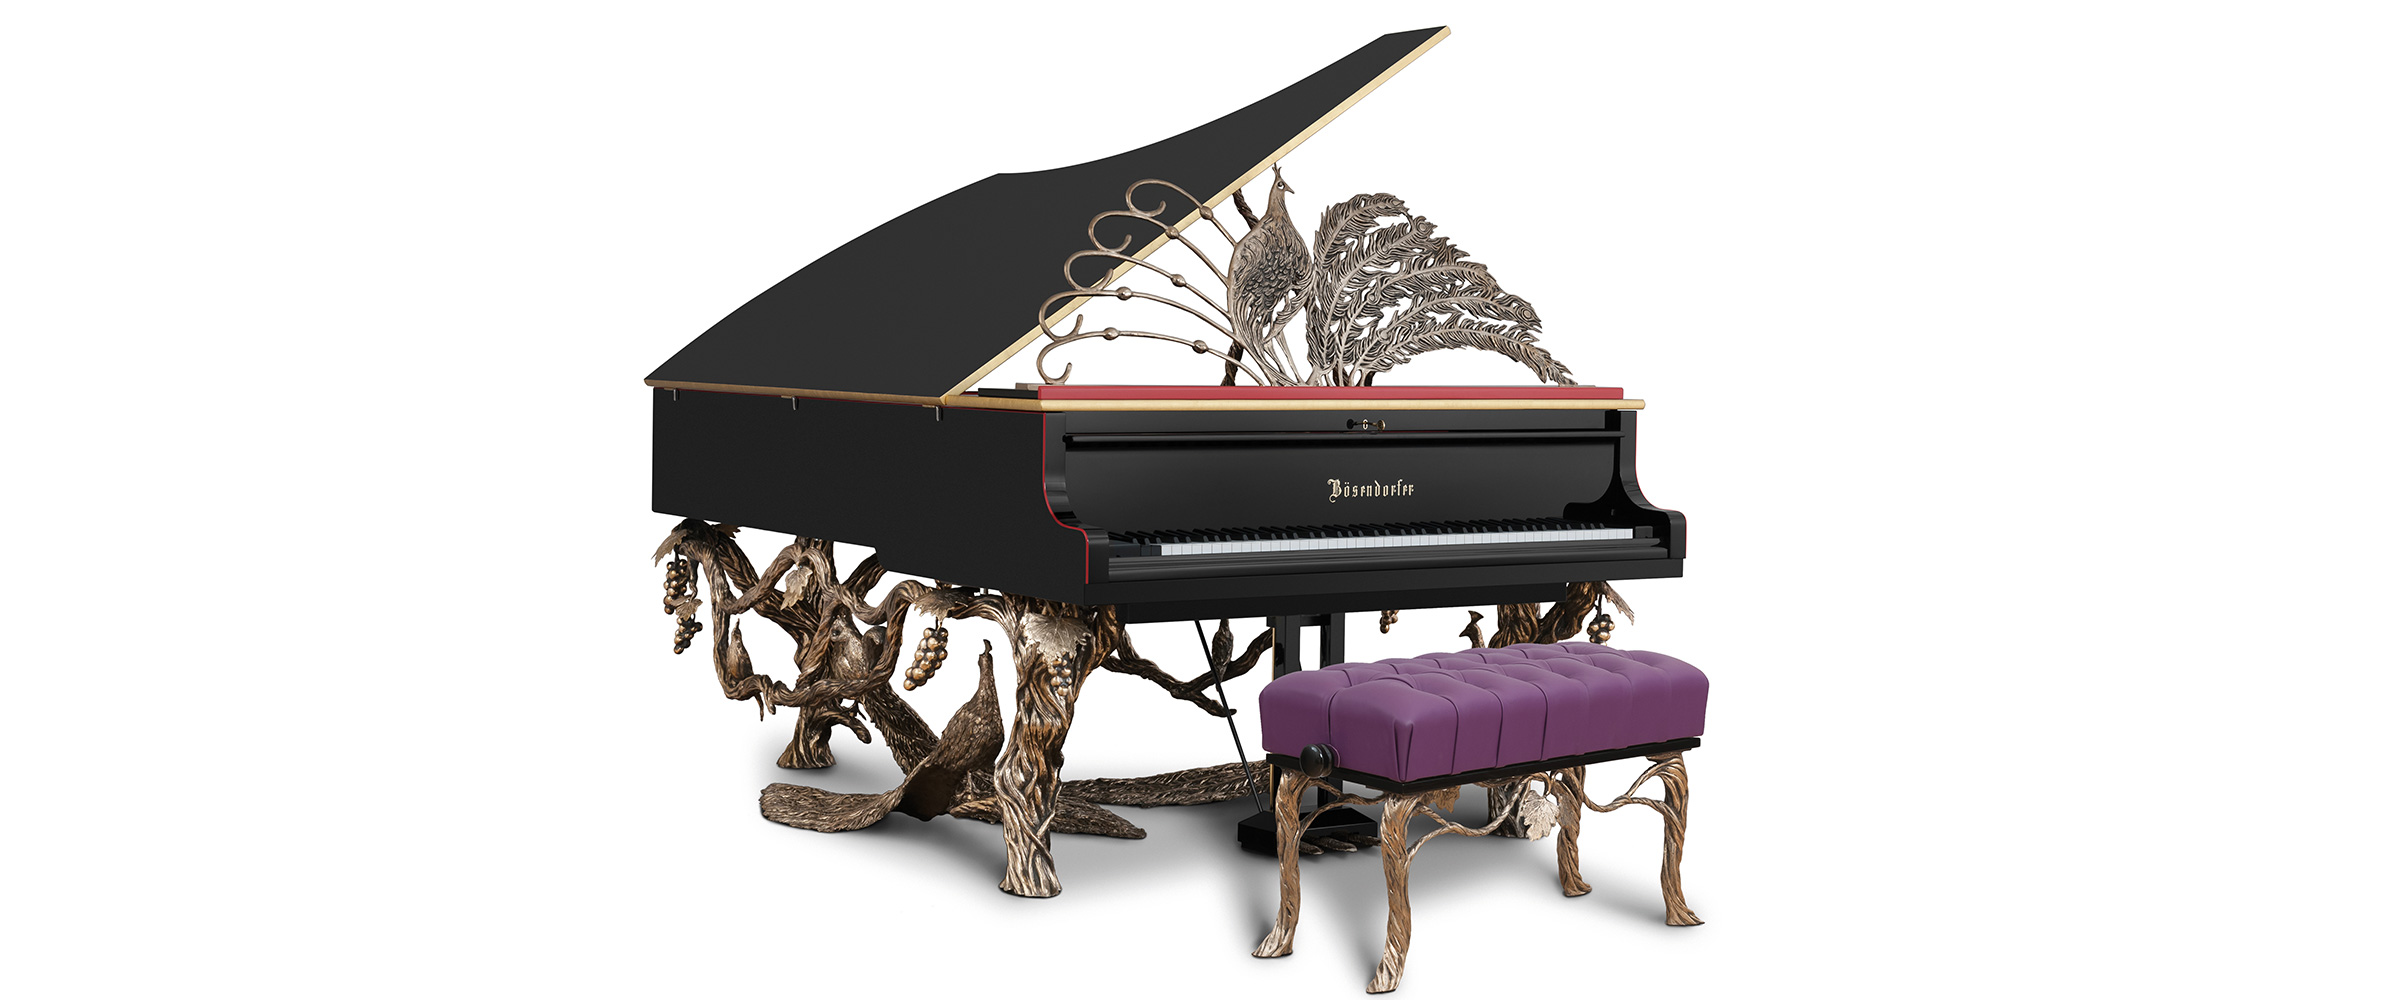 濮阳大型贝森朵夫钢琴特价_贝森朵夫钢琴销售相关-洛阳誉声乐器有限责任公司